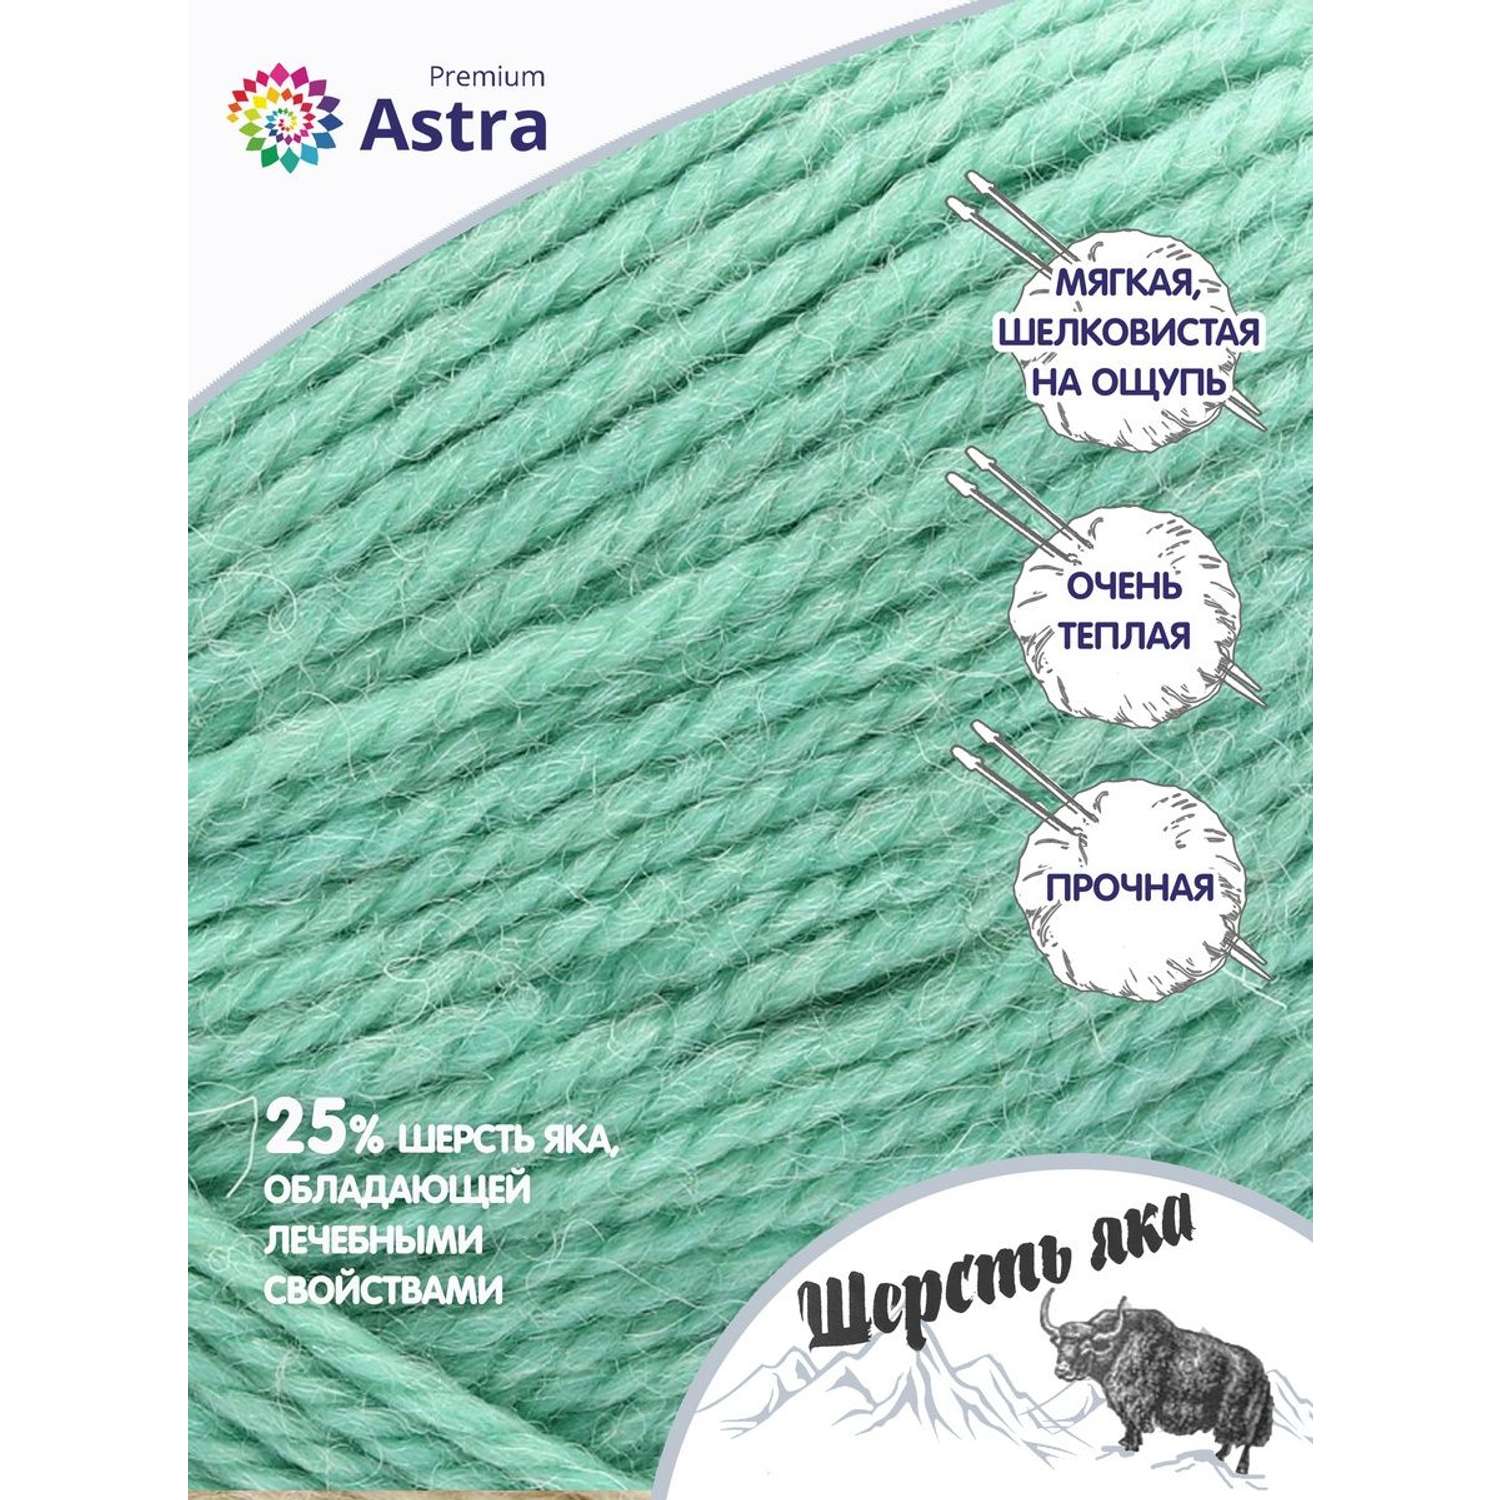 Пряжа Astra Premium Шерсть яка Yak wool теплая мягкая 100 г 120 м 02 мятный 2 мотка - фото 2